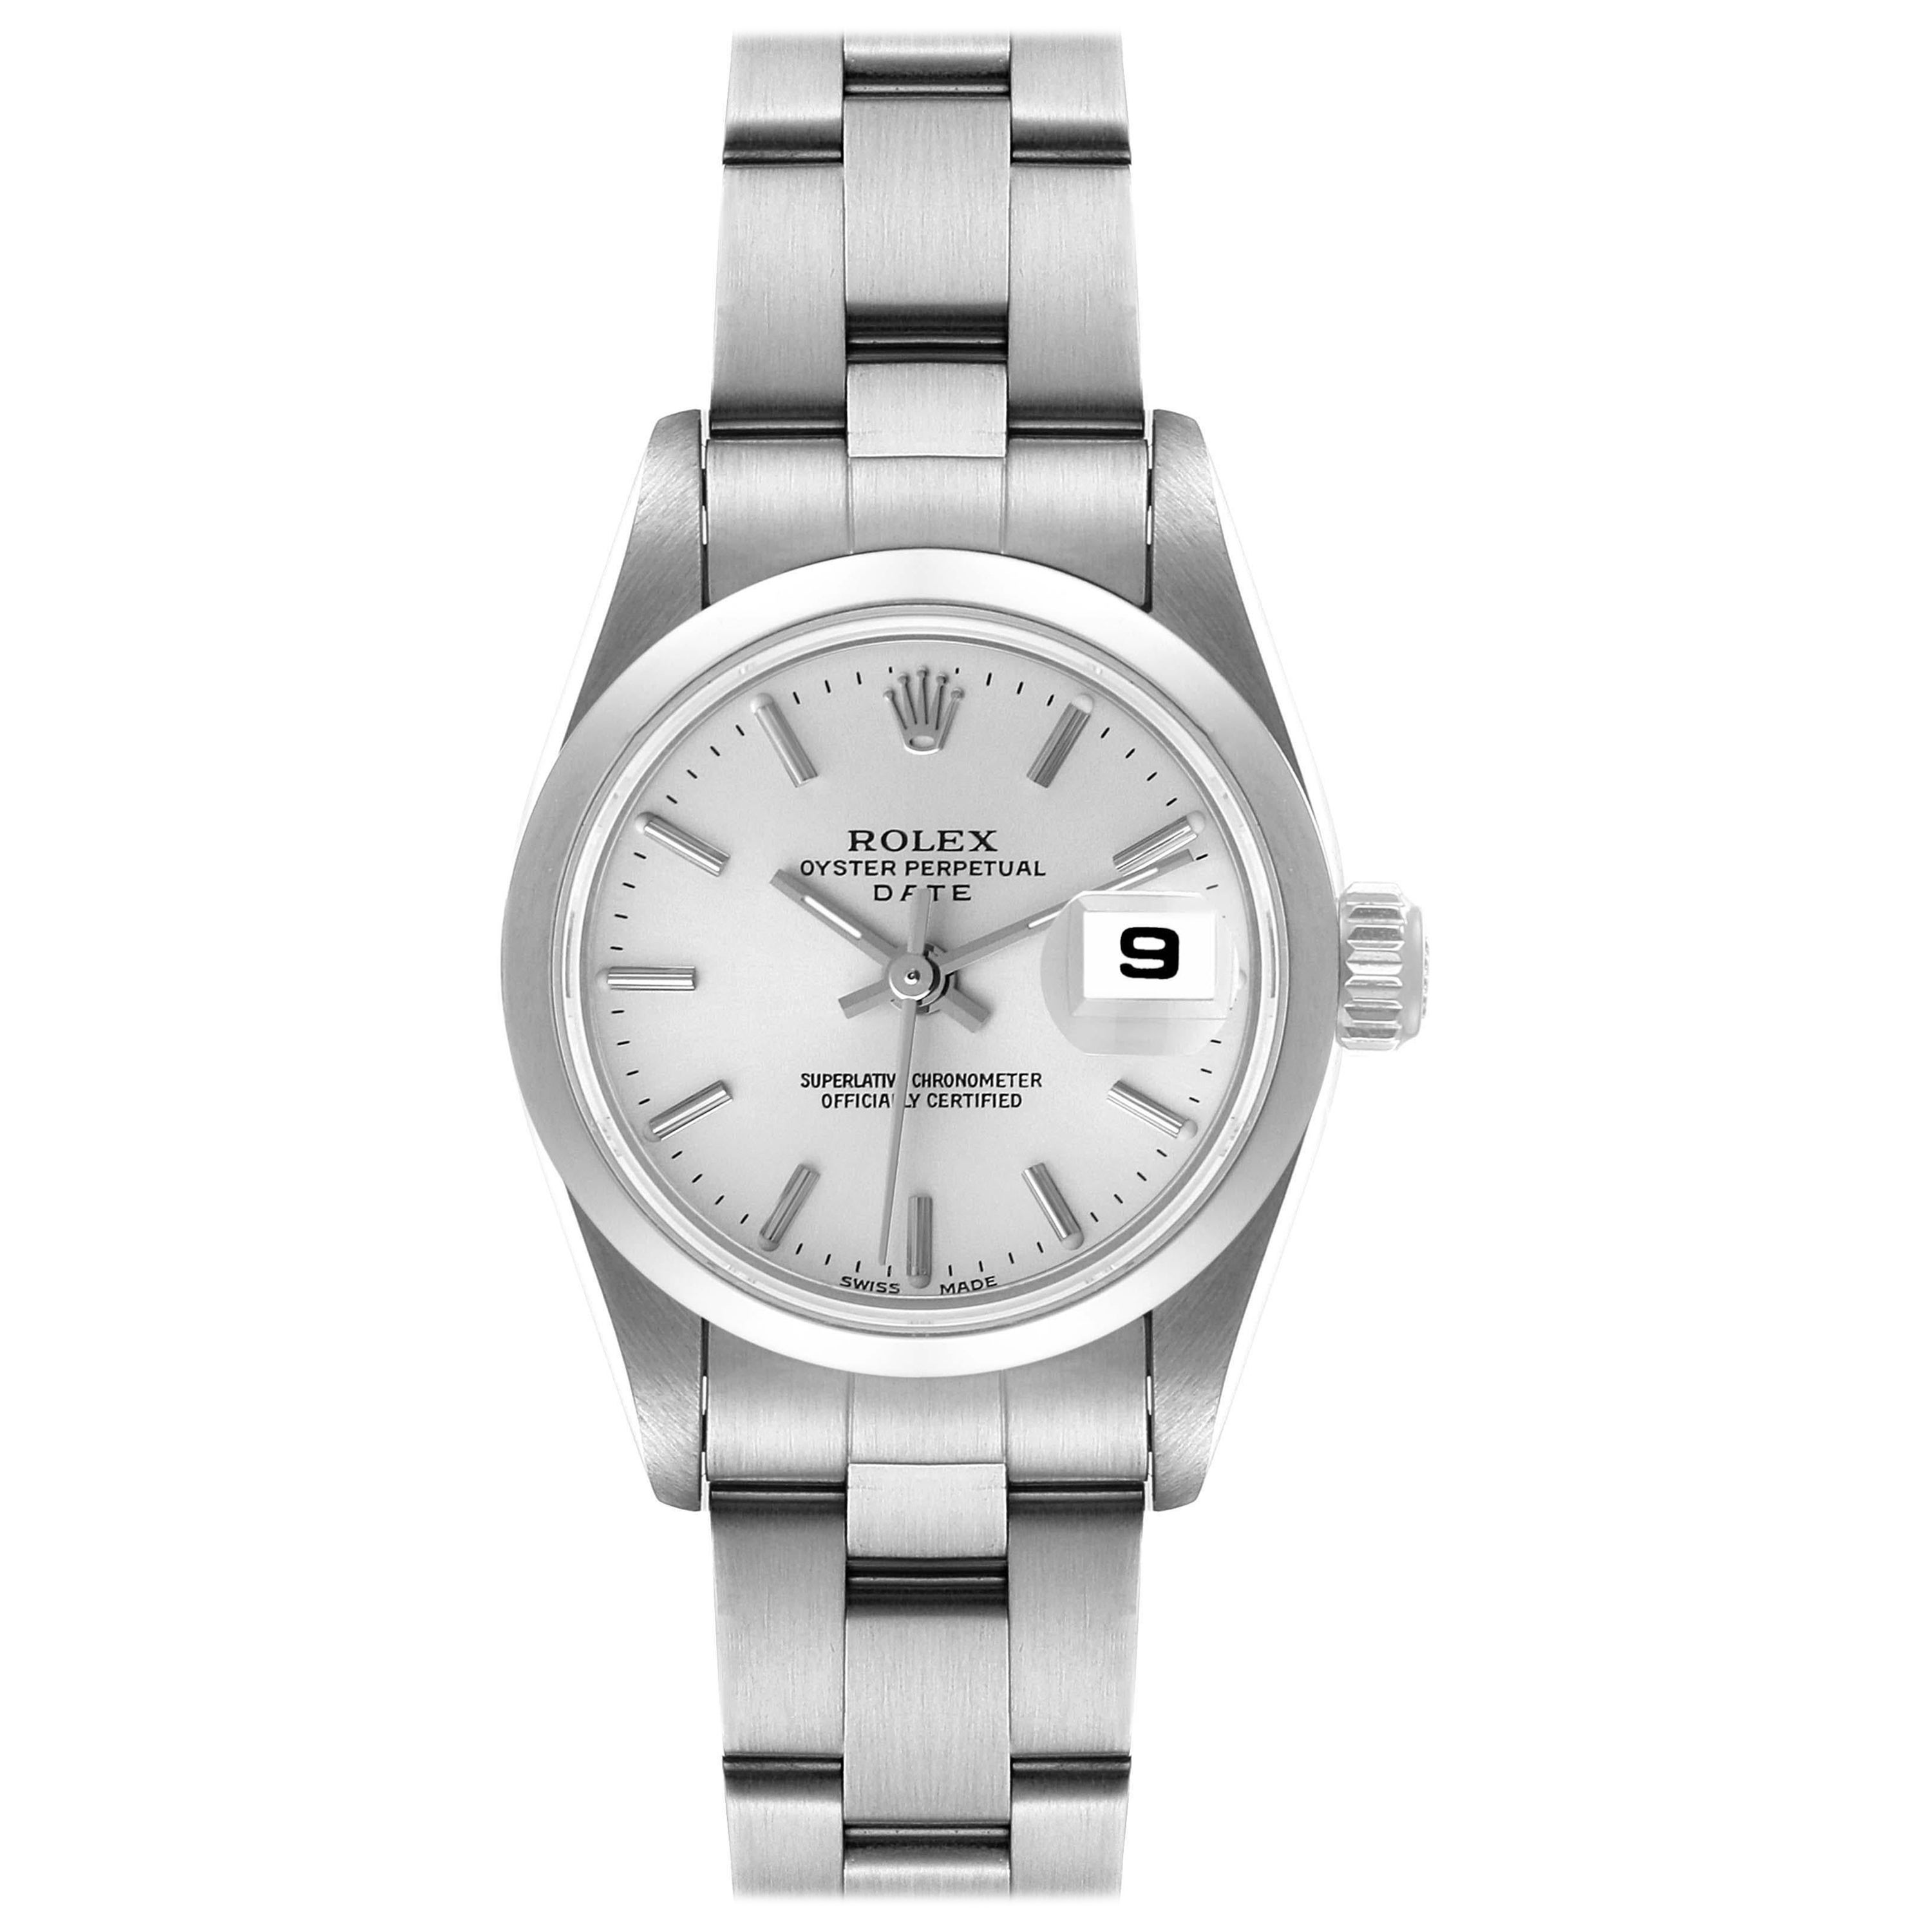 Rolex Date Silver Dial Oyster Bracelet Steel Ladies Watch 79160